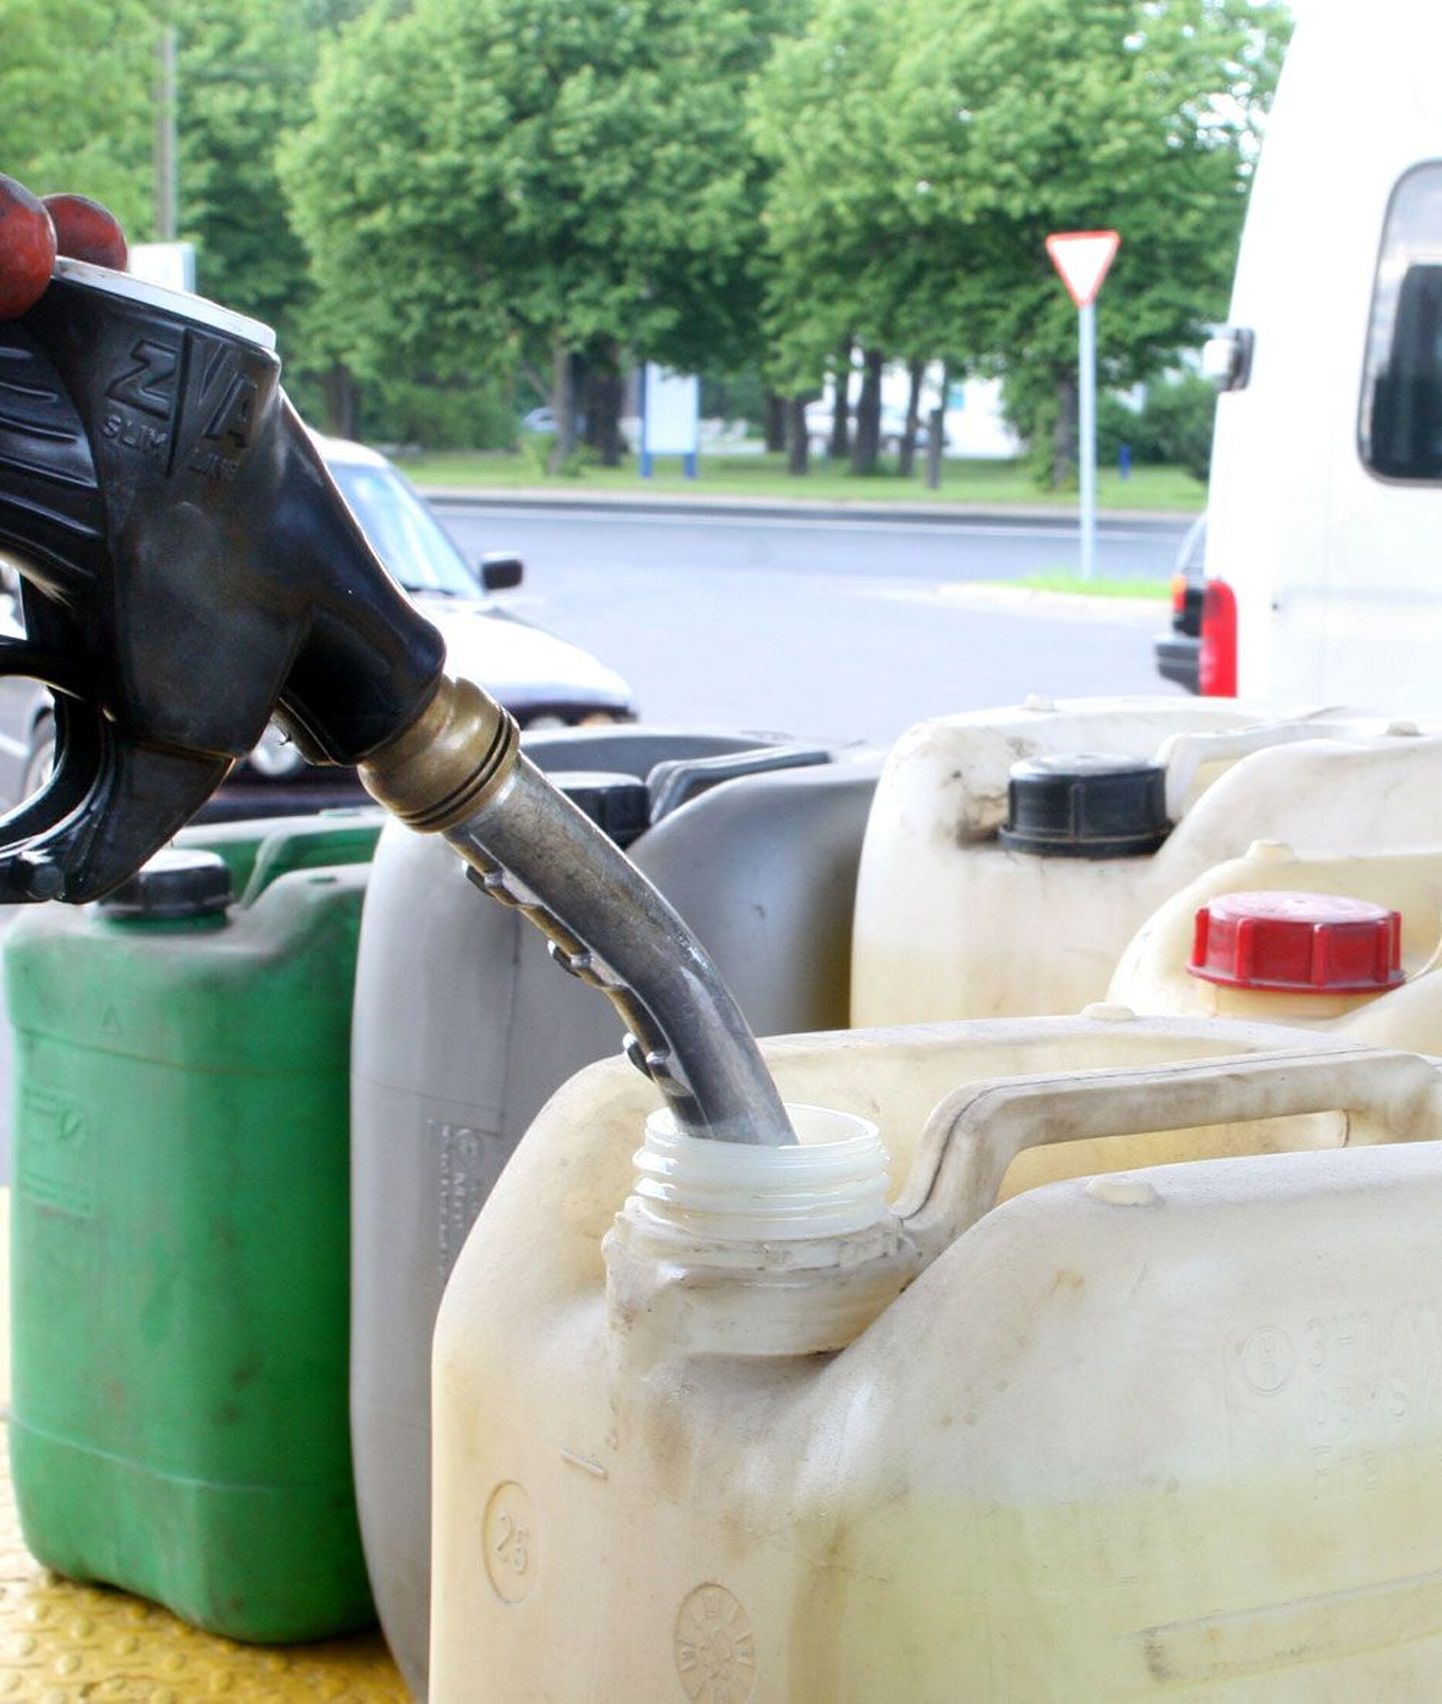 Põhja ringkonnaprokuratuur soovitab inimestel olla ettevaatlik, kui neile pakutakse kütust või mõnda muud kaupa liiga odavalt või turuväärtusest tunduvalt madalama hinnaga.